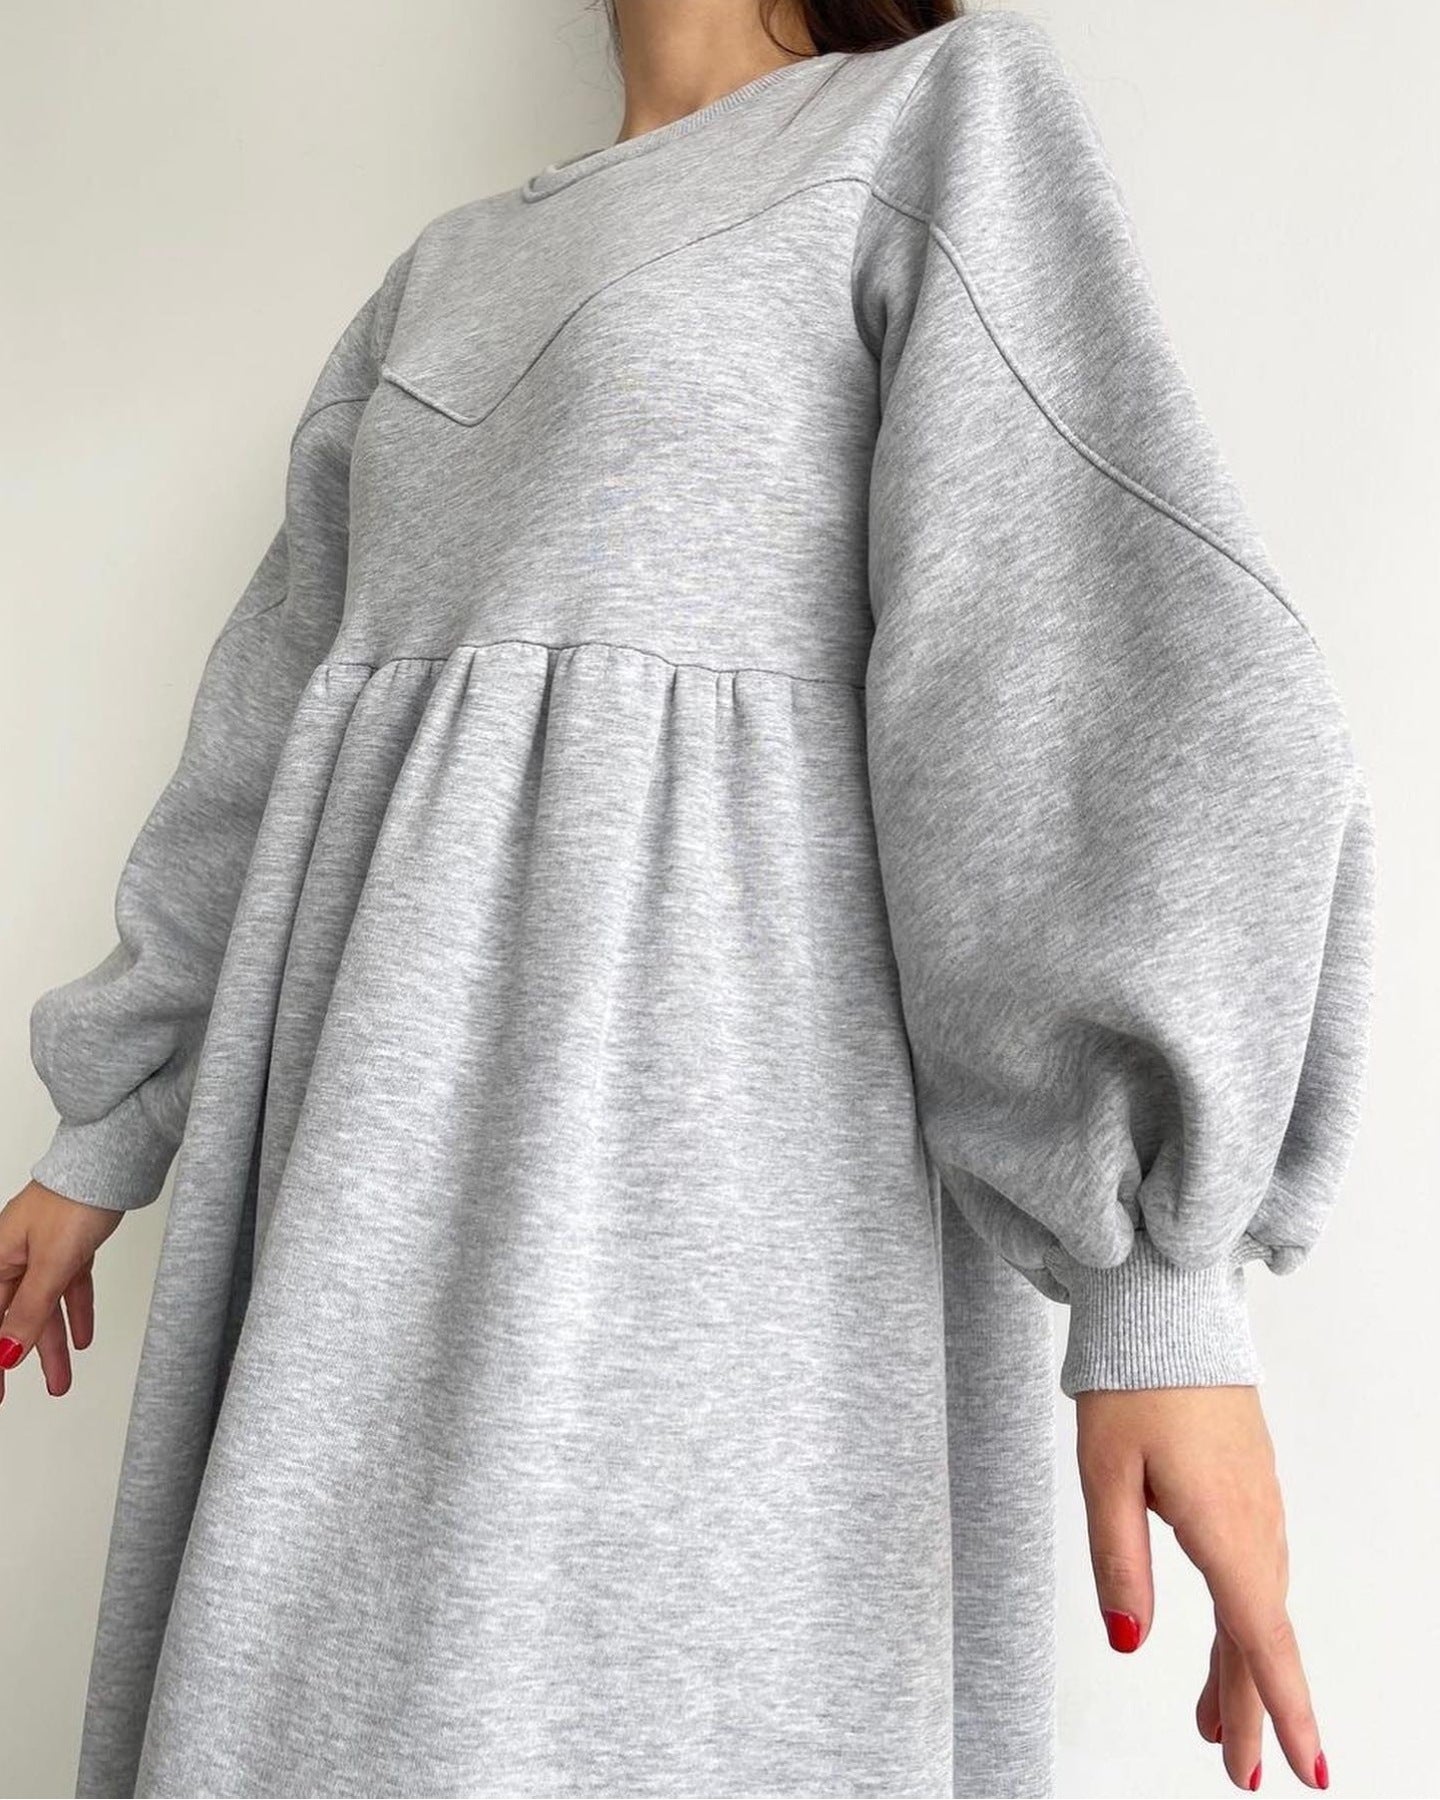 free size fleece dress